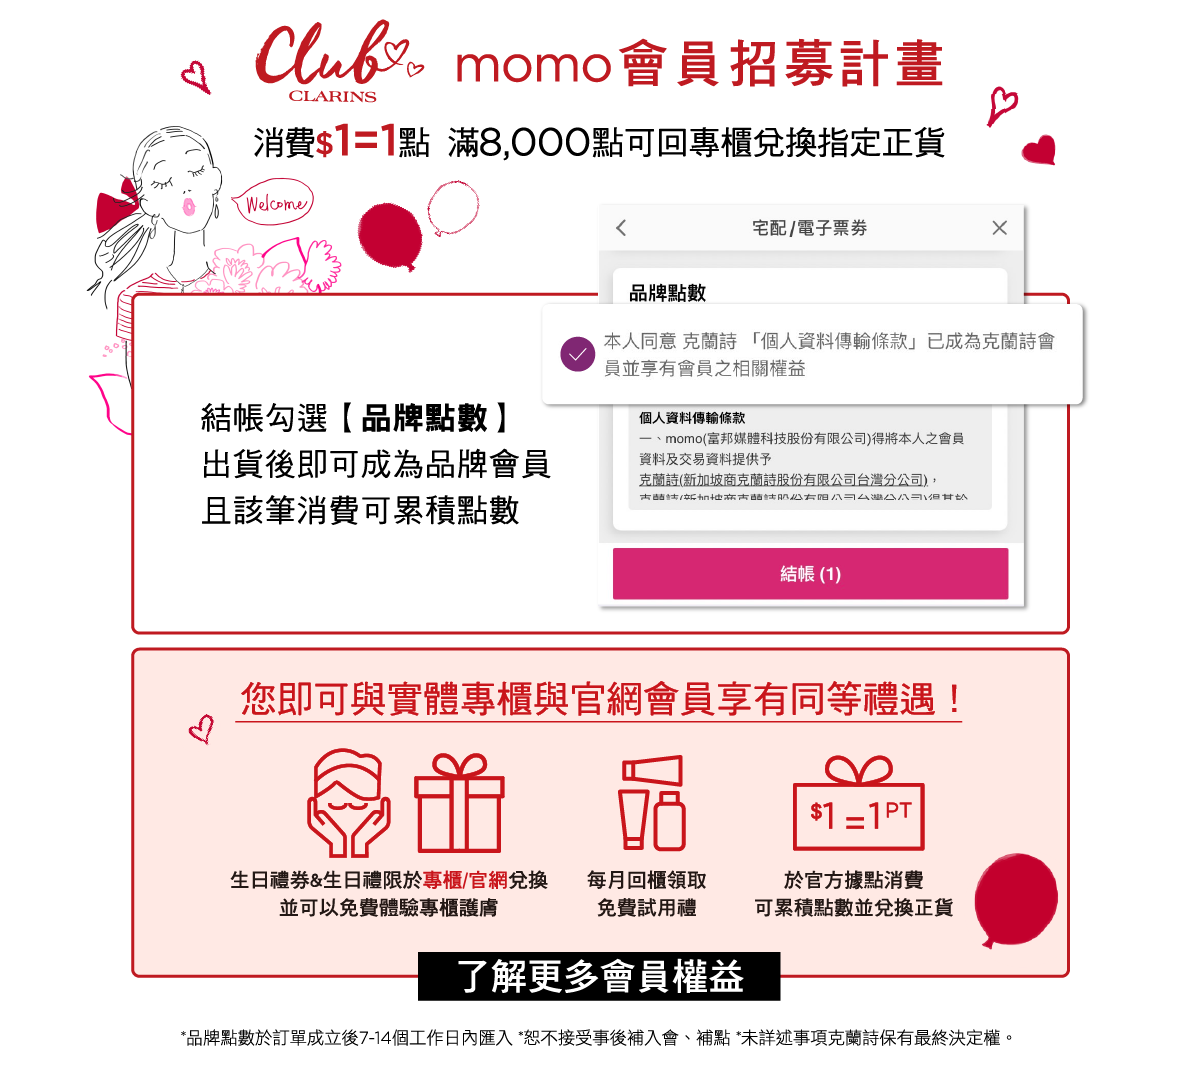 Clarins momo會員招募計畫 消費$1=1點 滿8,000點可回專櫃兌換指定正貨